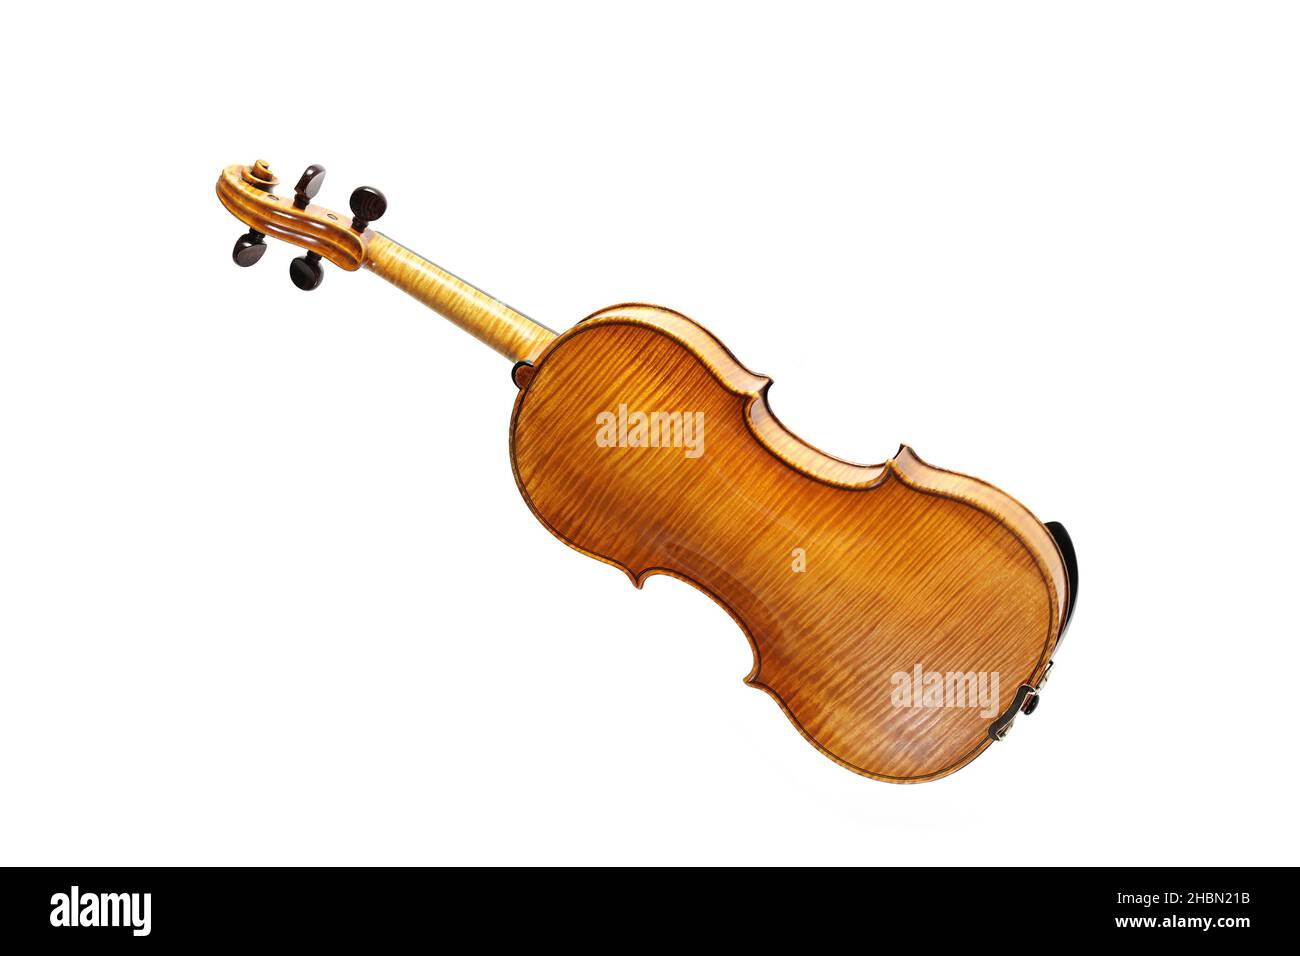 Violon de derrière montrant le grain de bois, également appelé violon, instrument de musique à cordes de la famille du viol, isolé sur fond blanc, copie Banque D'Images